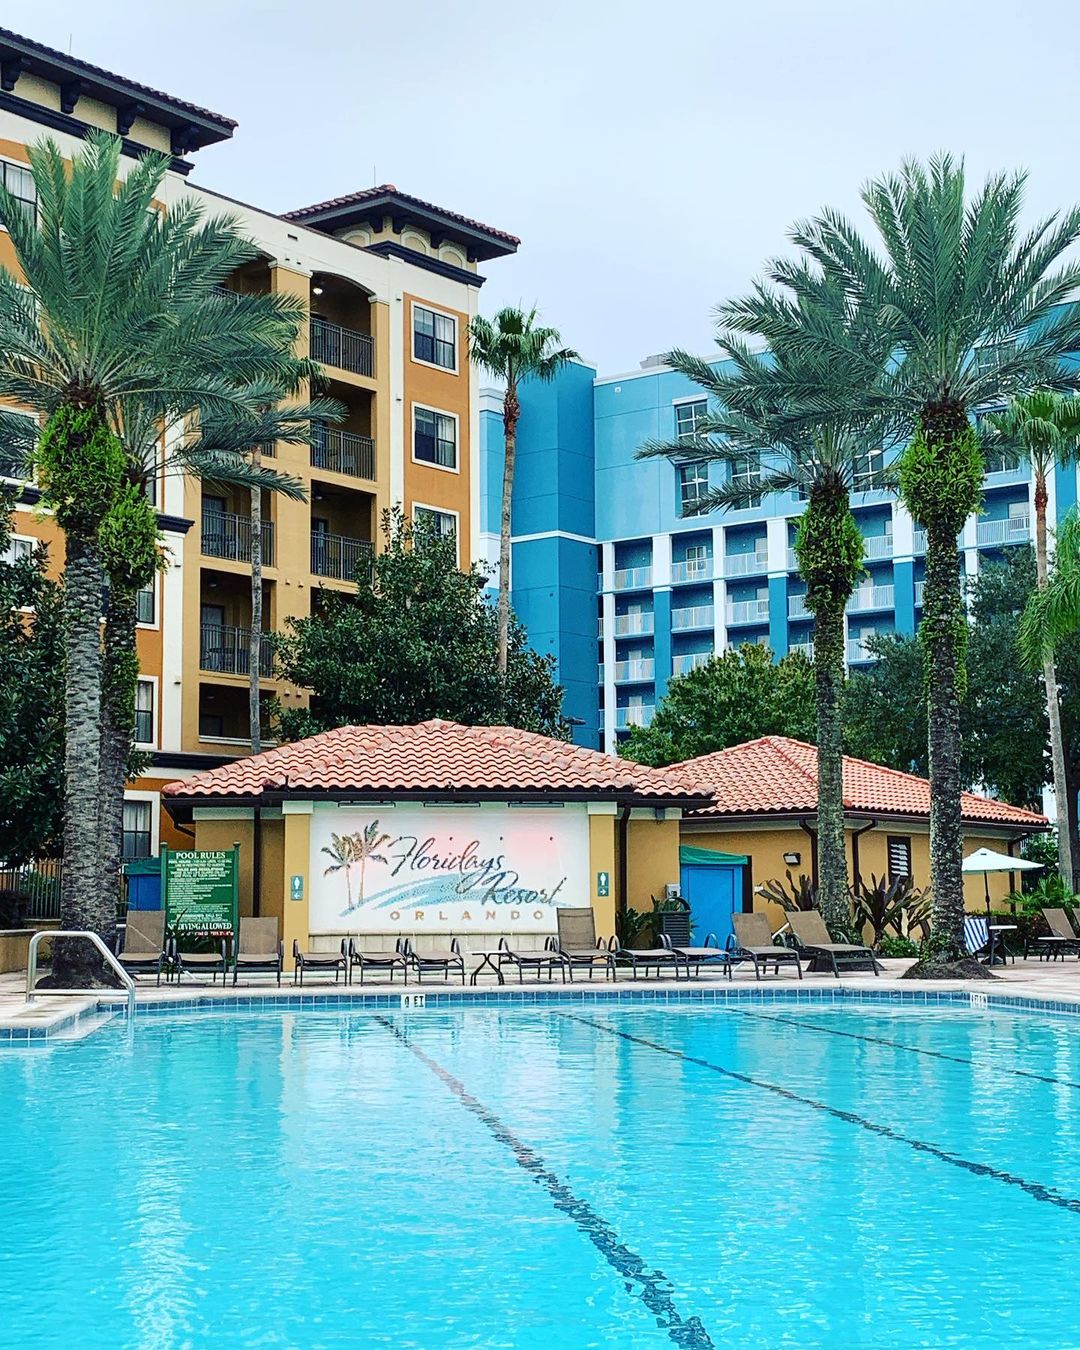 Piscina do Floridays Resort Orlando - Hotel da International Drive